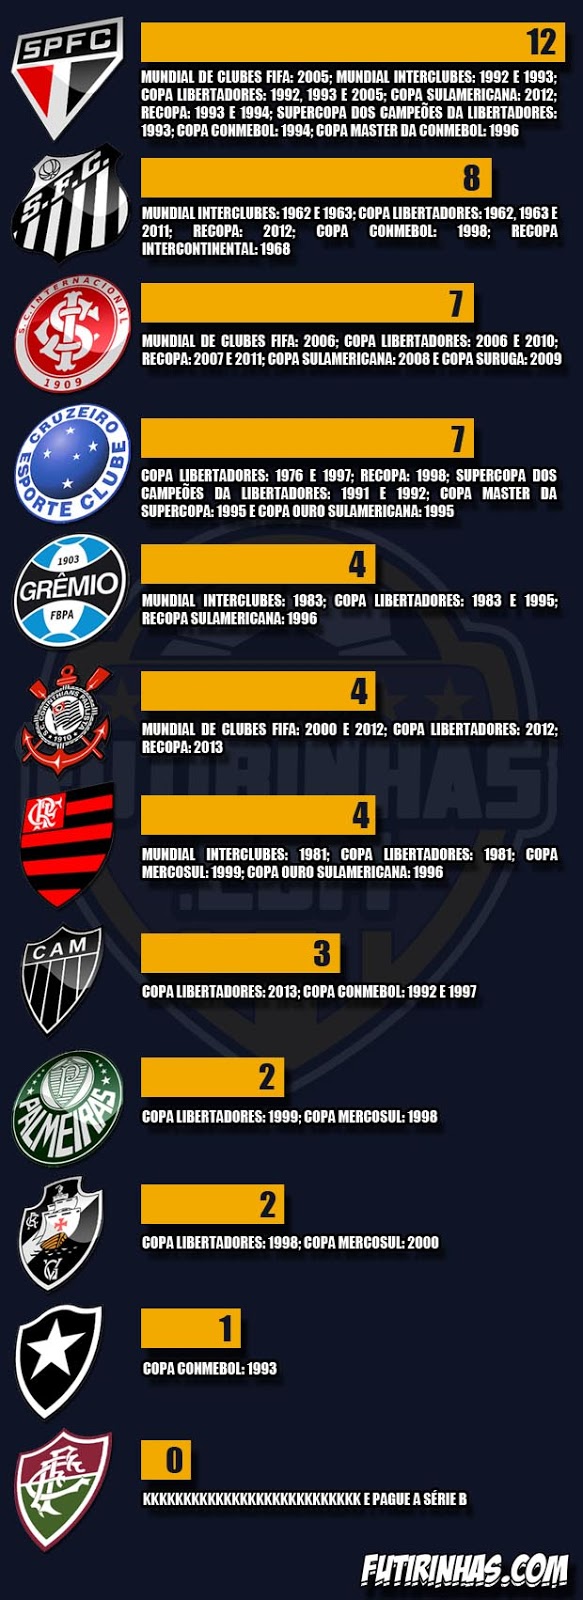 Títulos Internacionais oficiais dos Clubes Brasileiros : r/futebol